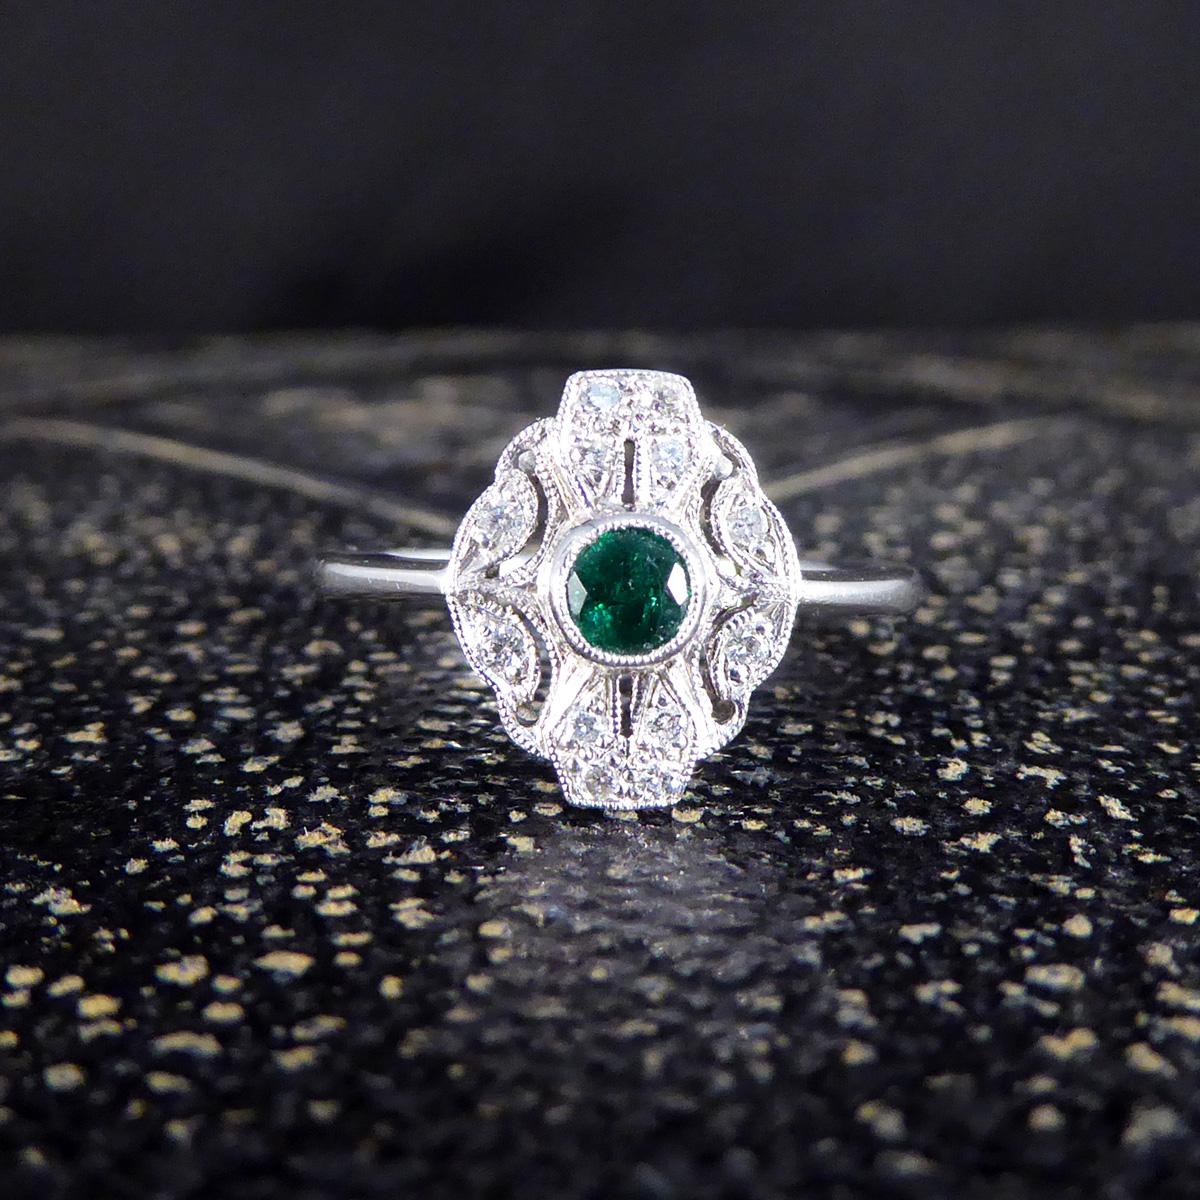 Premium Period Art Deco Replica Emerald and Diamond Ring in 18ct White Gold For Sale 2